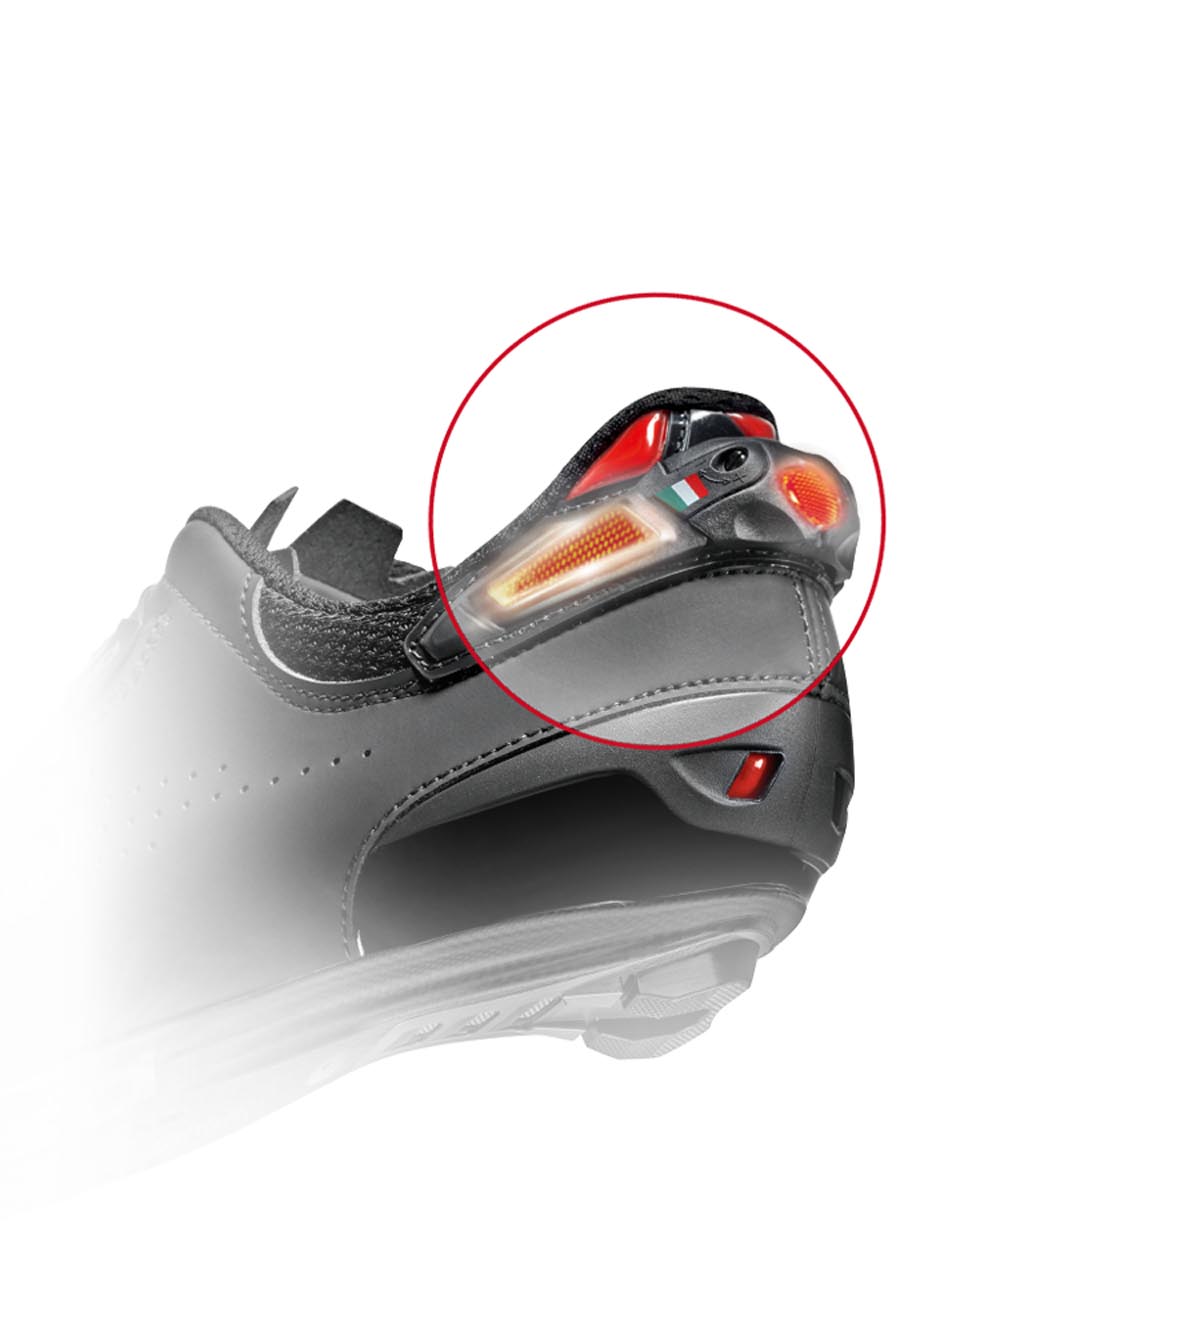 更贴合的分体双旋钮 SIDI发布新款Shot 2公路车锁鞋